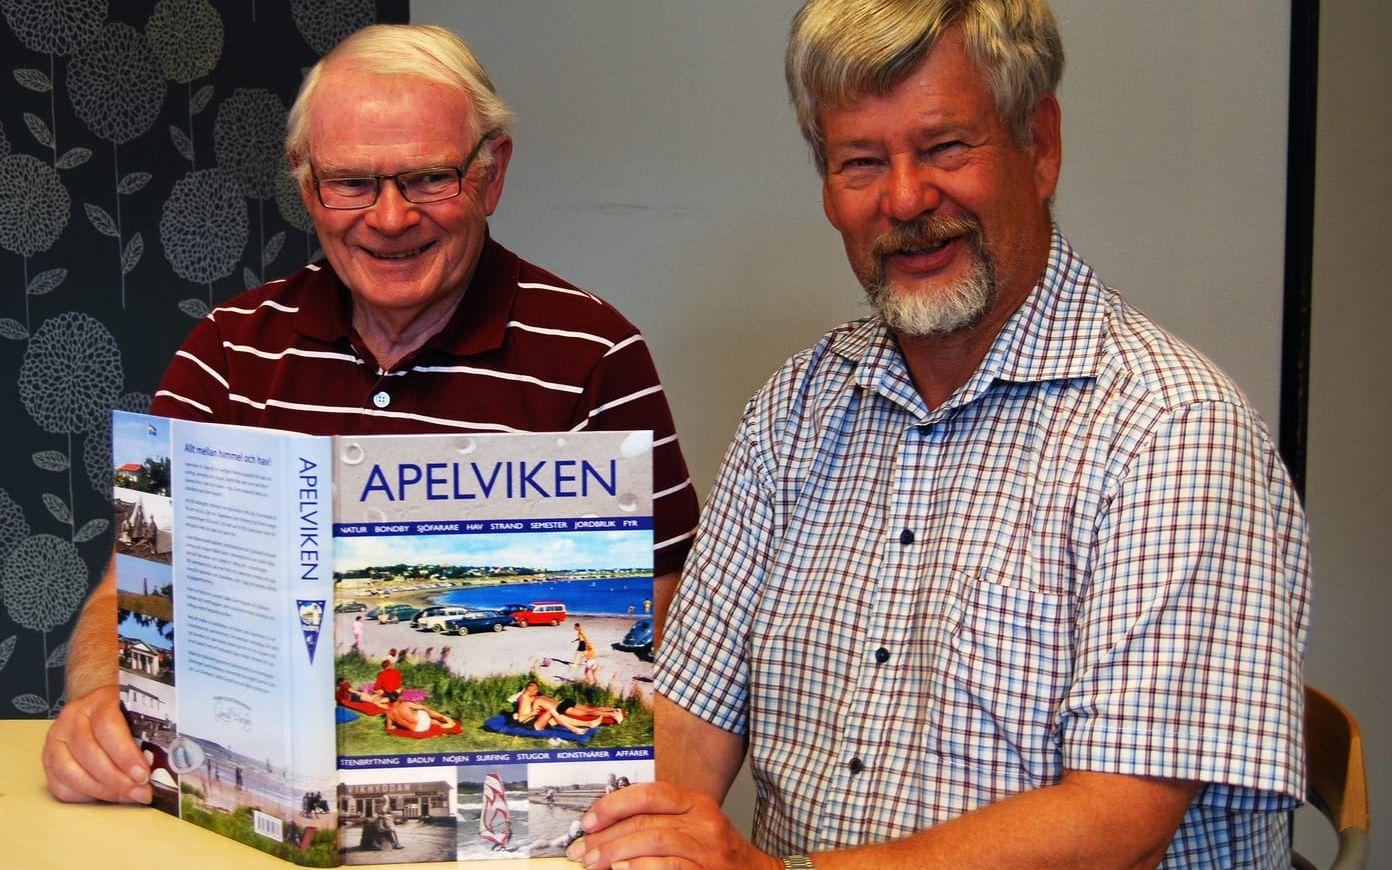 Björn Johansson och Gunnar Carlsson som har varit med och skrivit boken fotades av HN när den kom ut 2016.